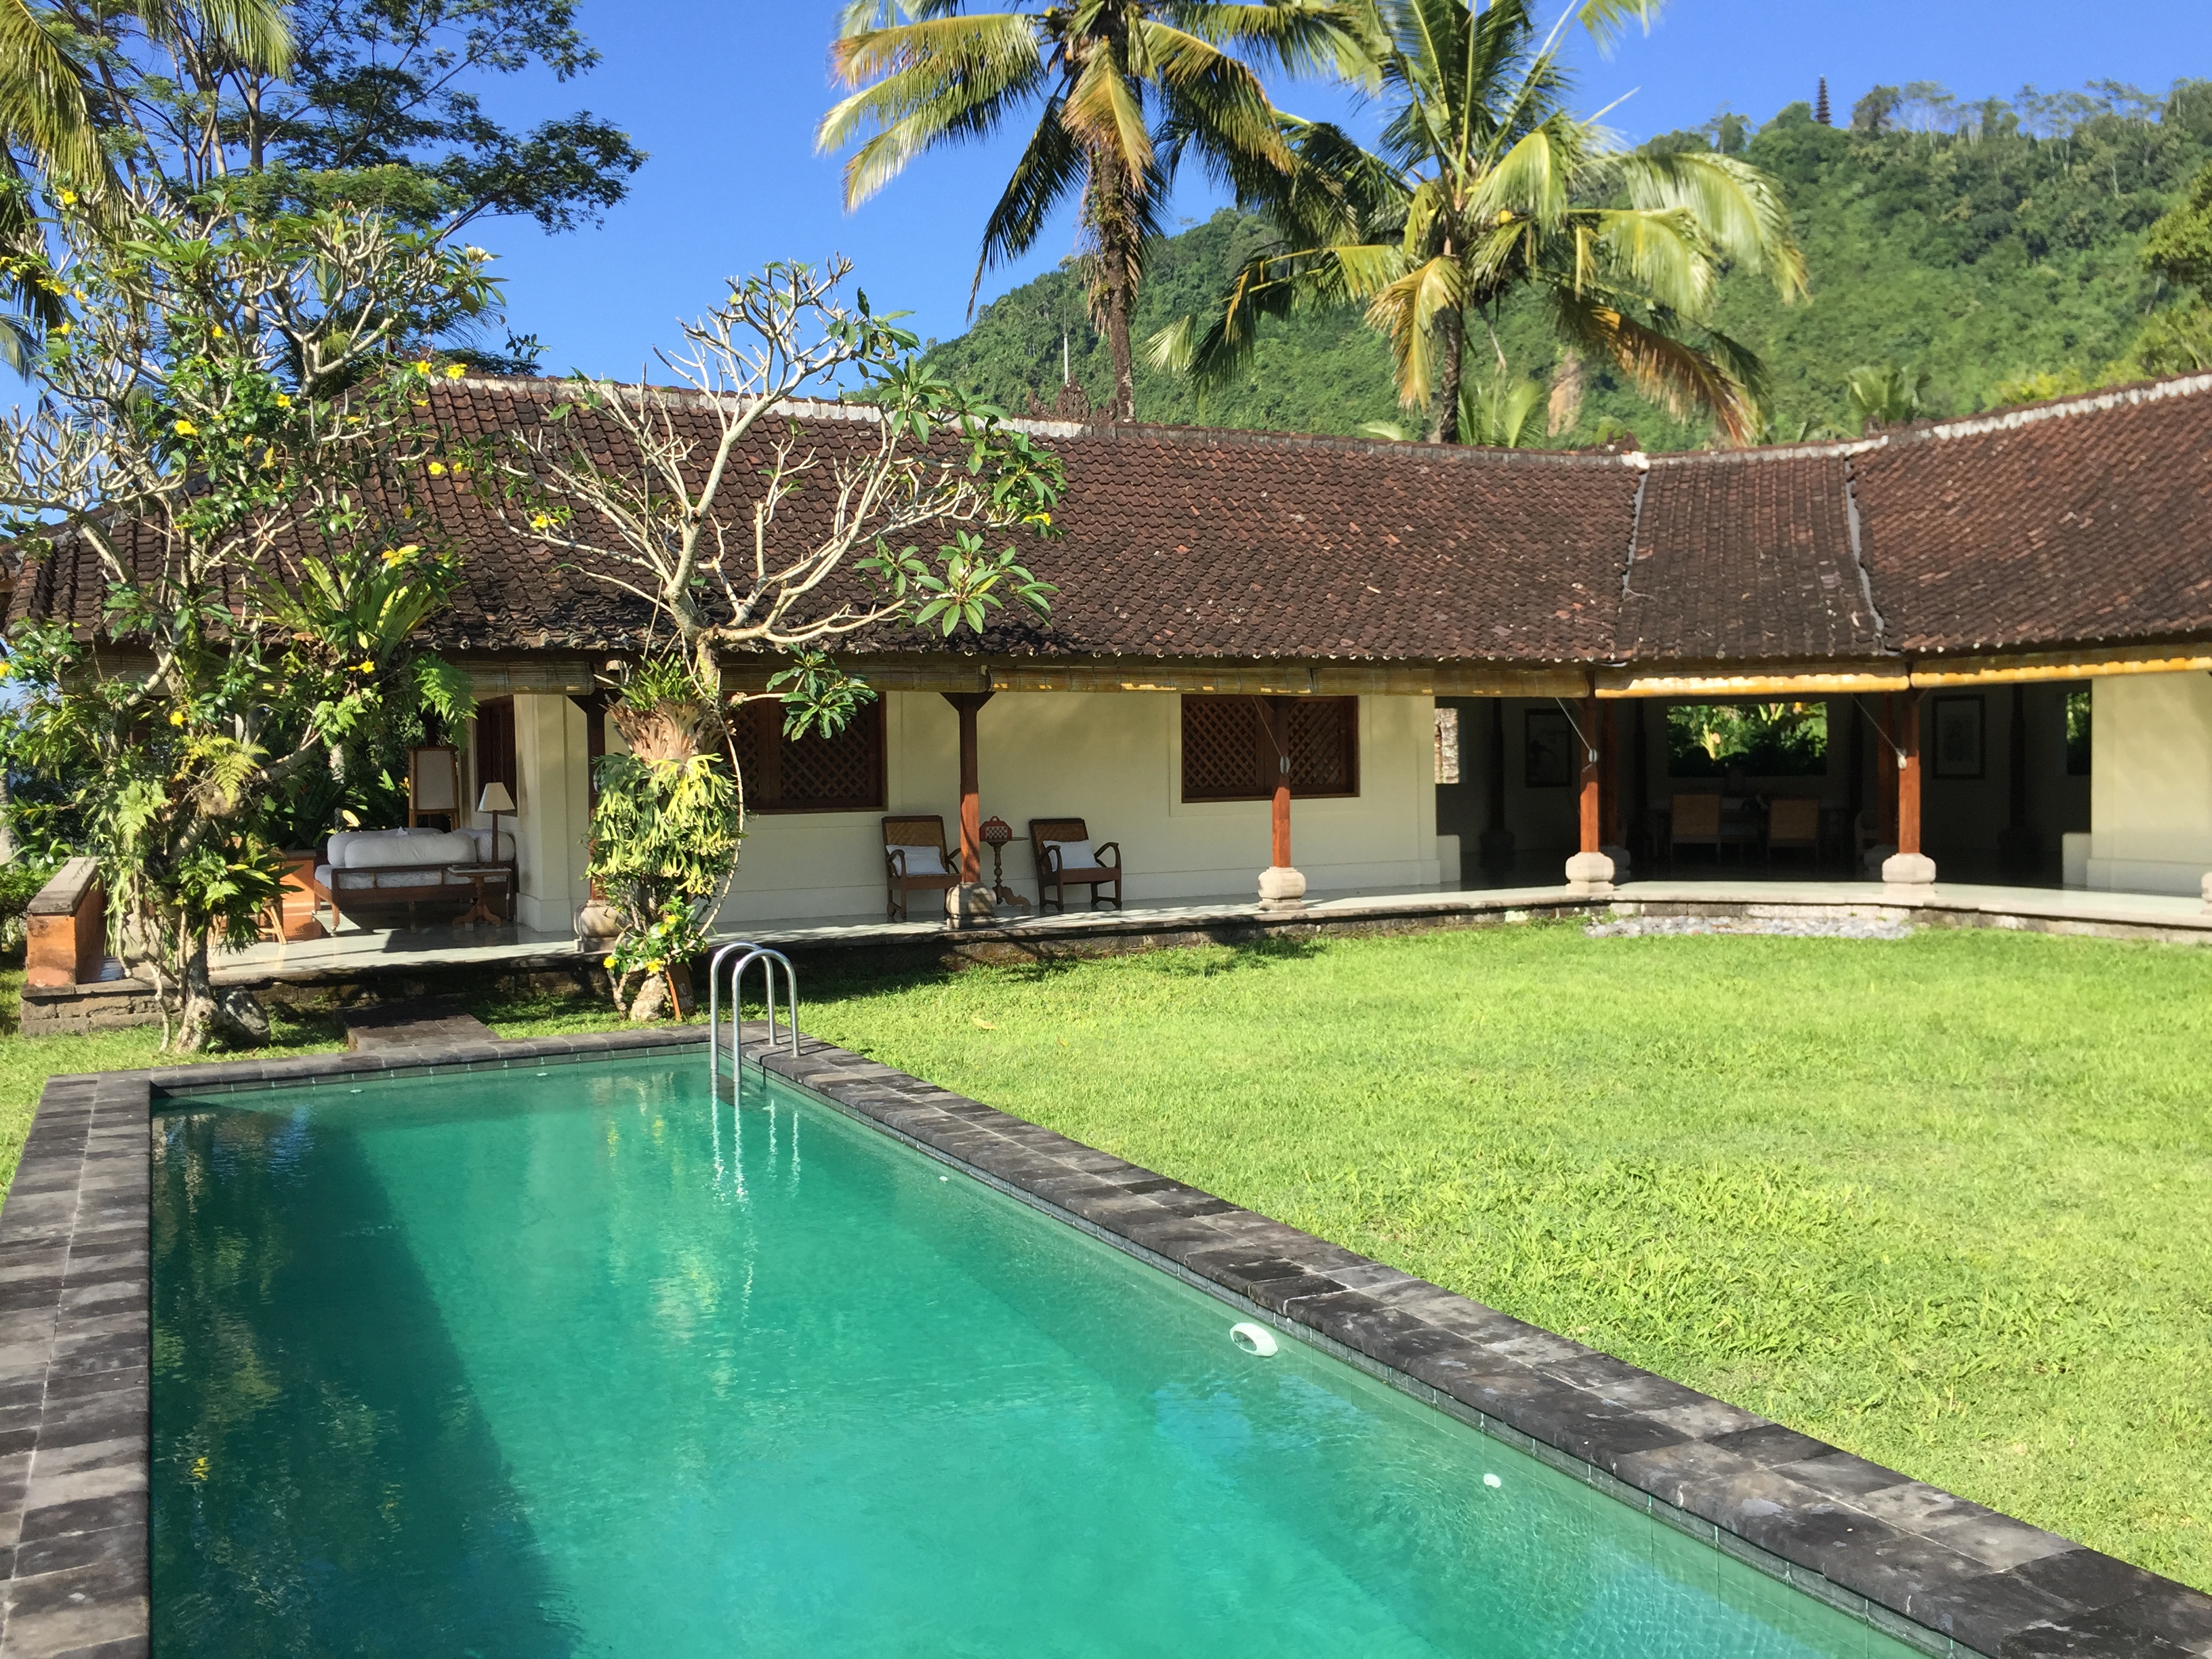 2127Hospedarse en Villa Idanna, uno de los mejores secretos guardados de Bali. Indonesia